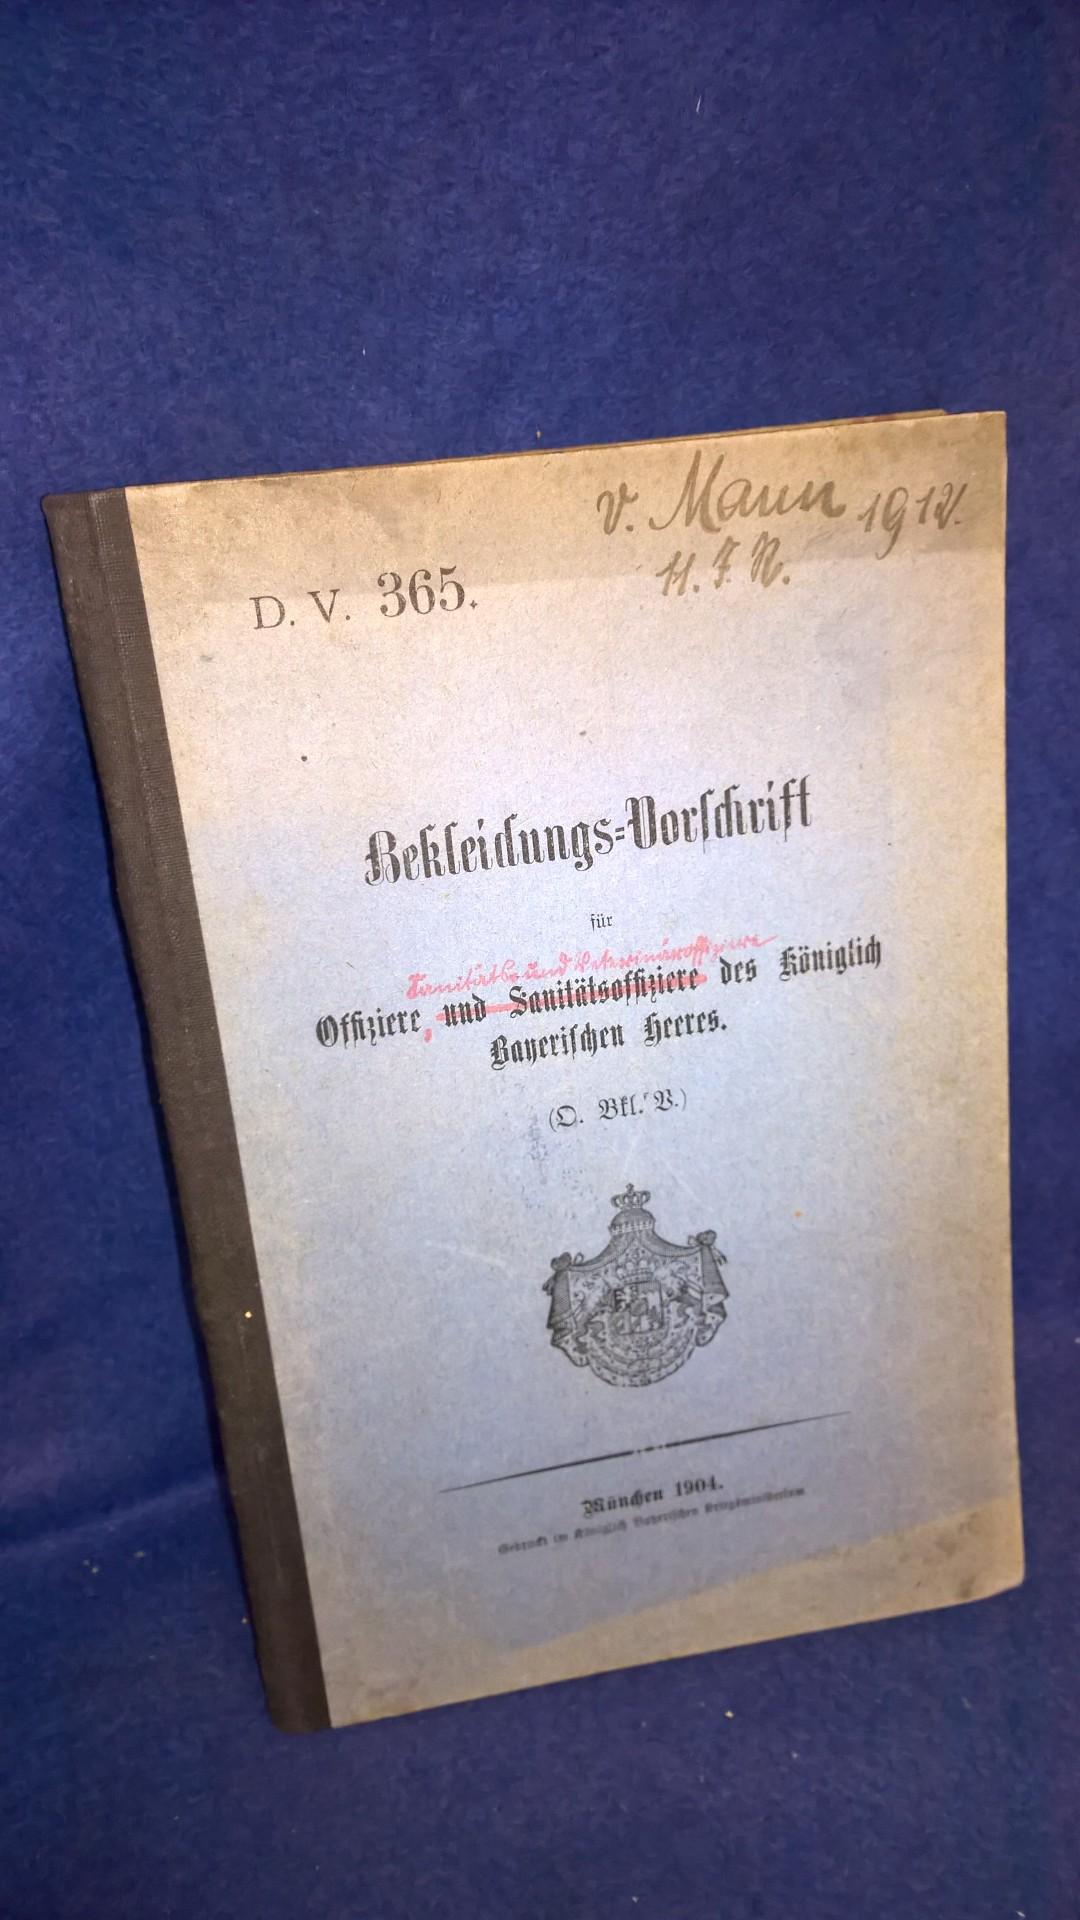 D. V. 365. Bekleidungs-Vorschrift für Offiziere und Sanitätsoffiziere des königlich Bayerischen Heeres. (O.Bkl.V.). 